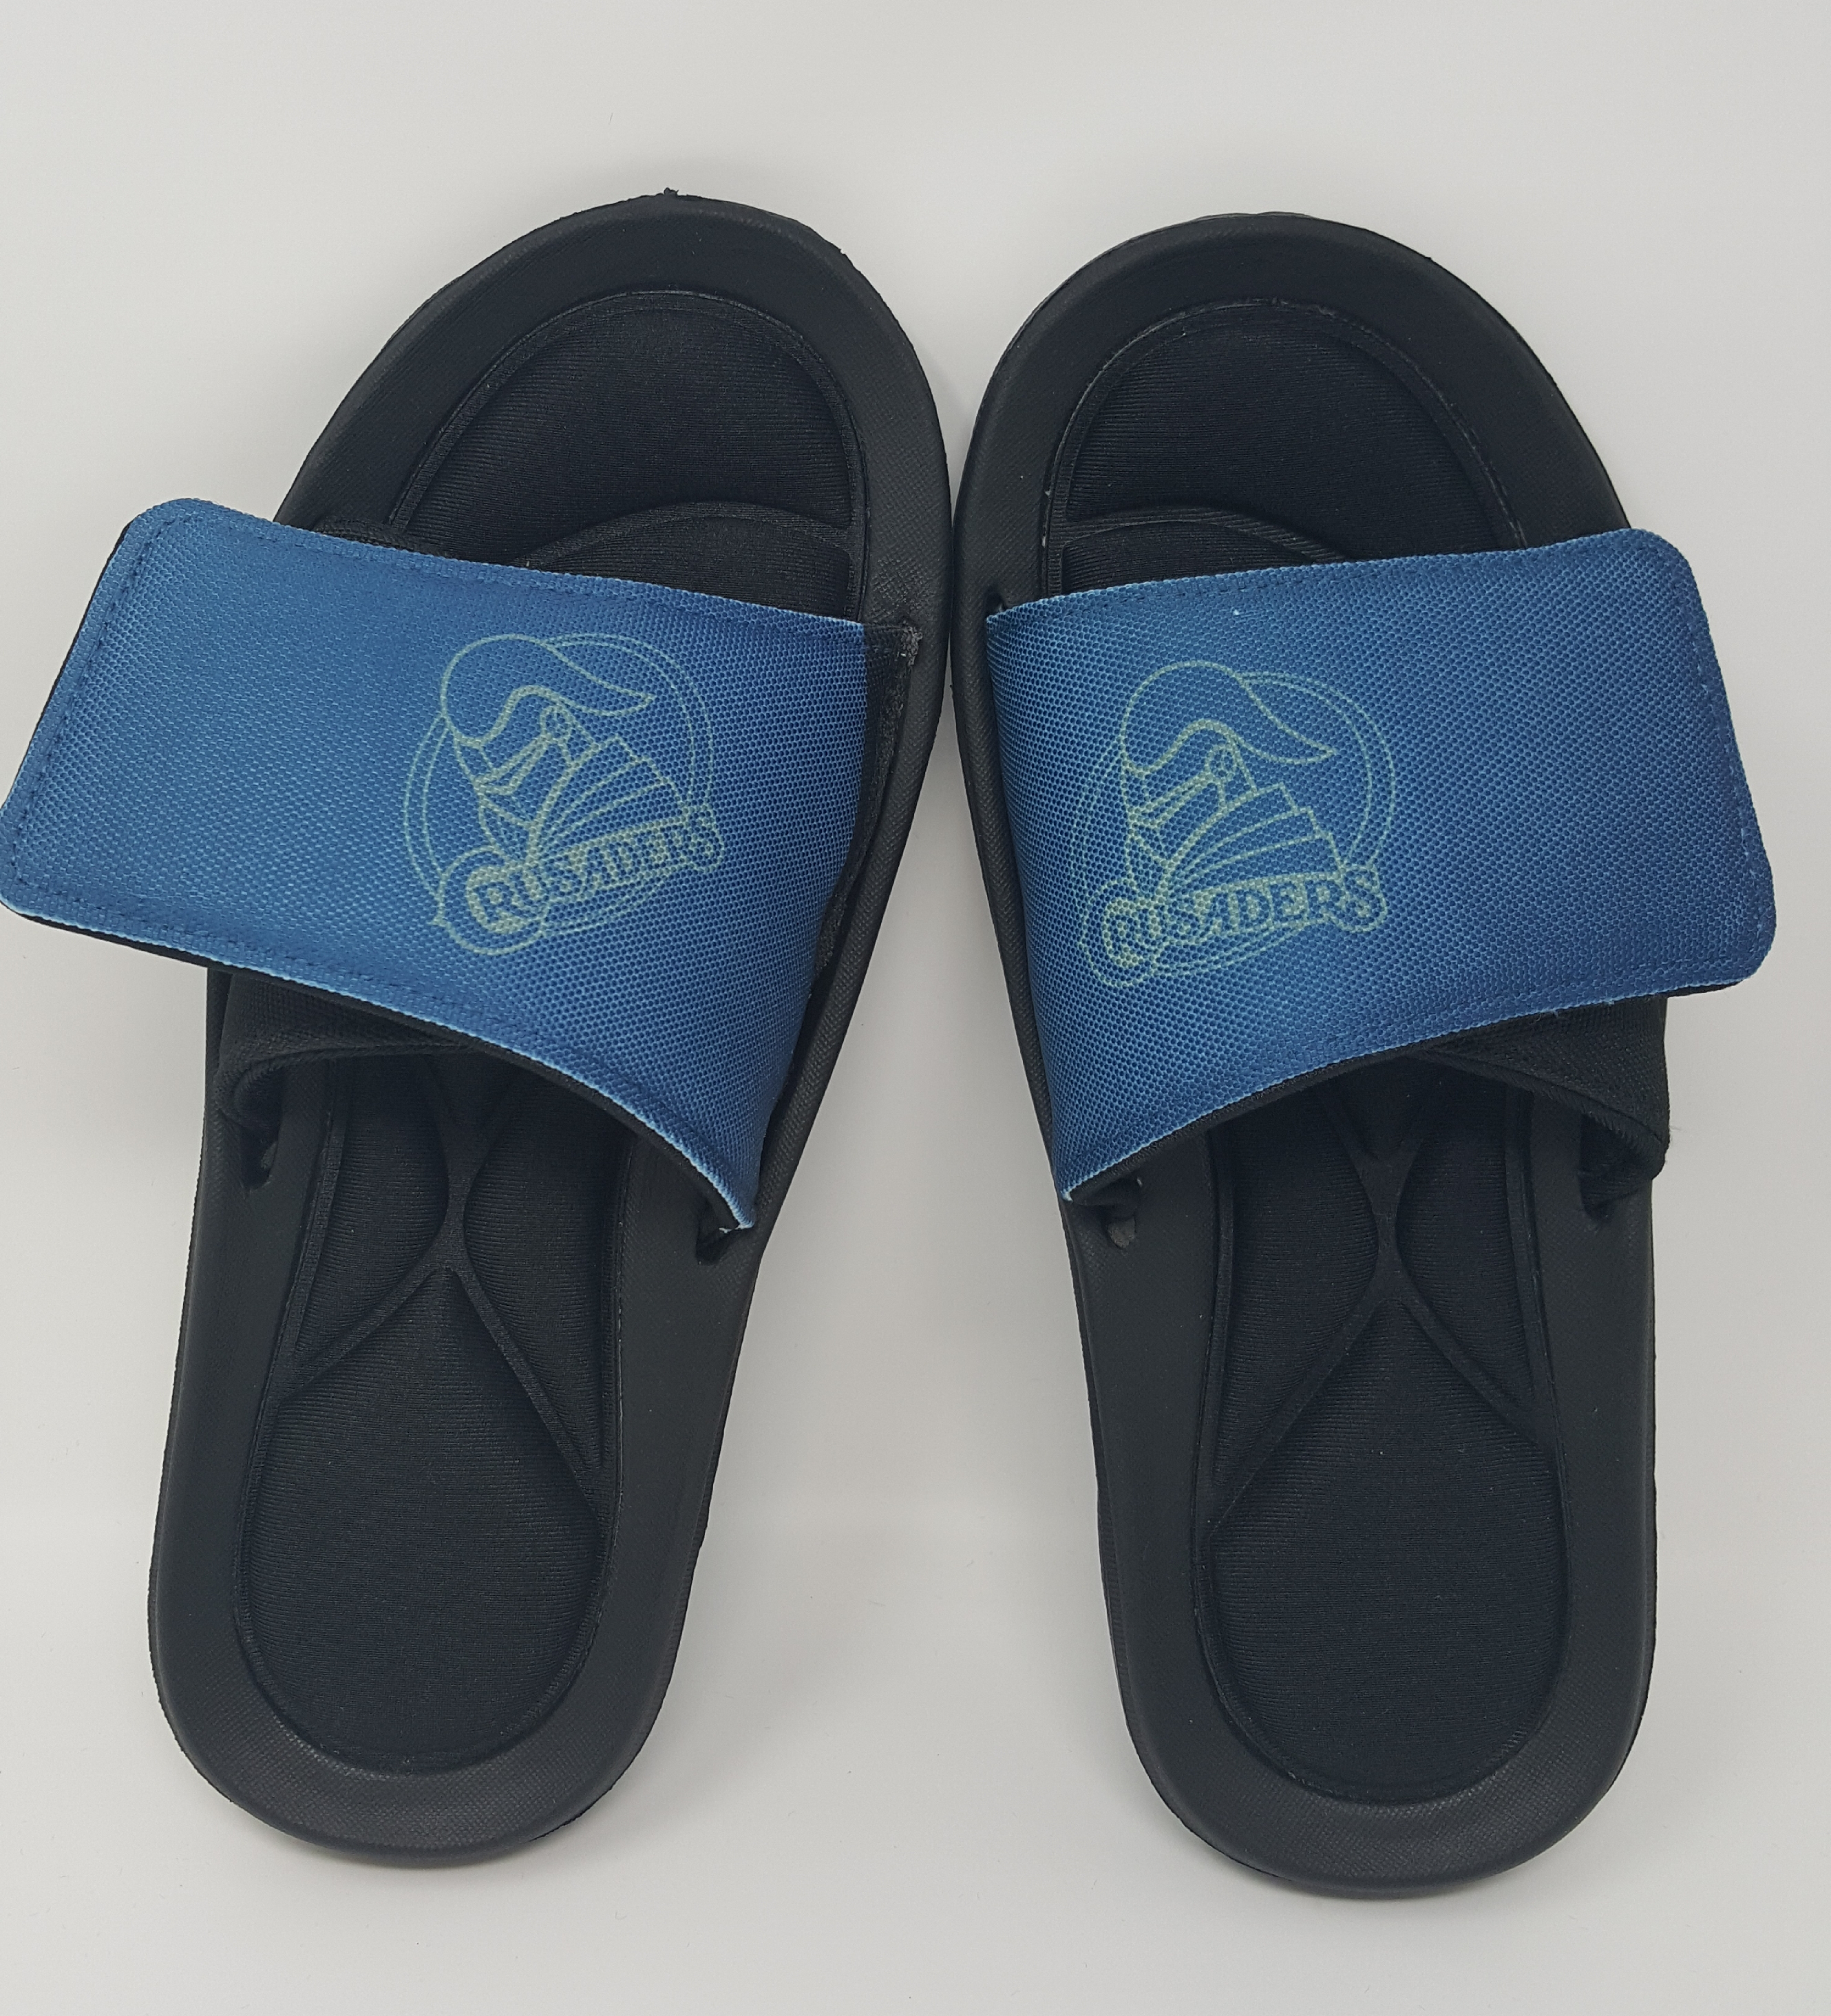 Slide Sandal (Sandal Sizes: XS - Women 5, Kid 4)